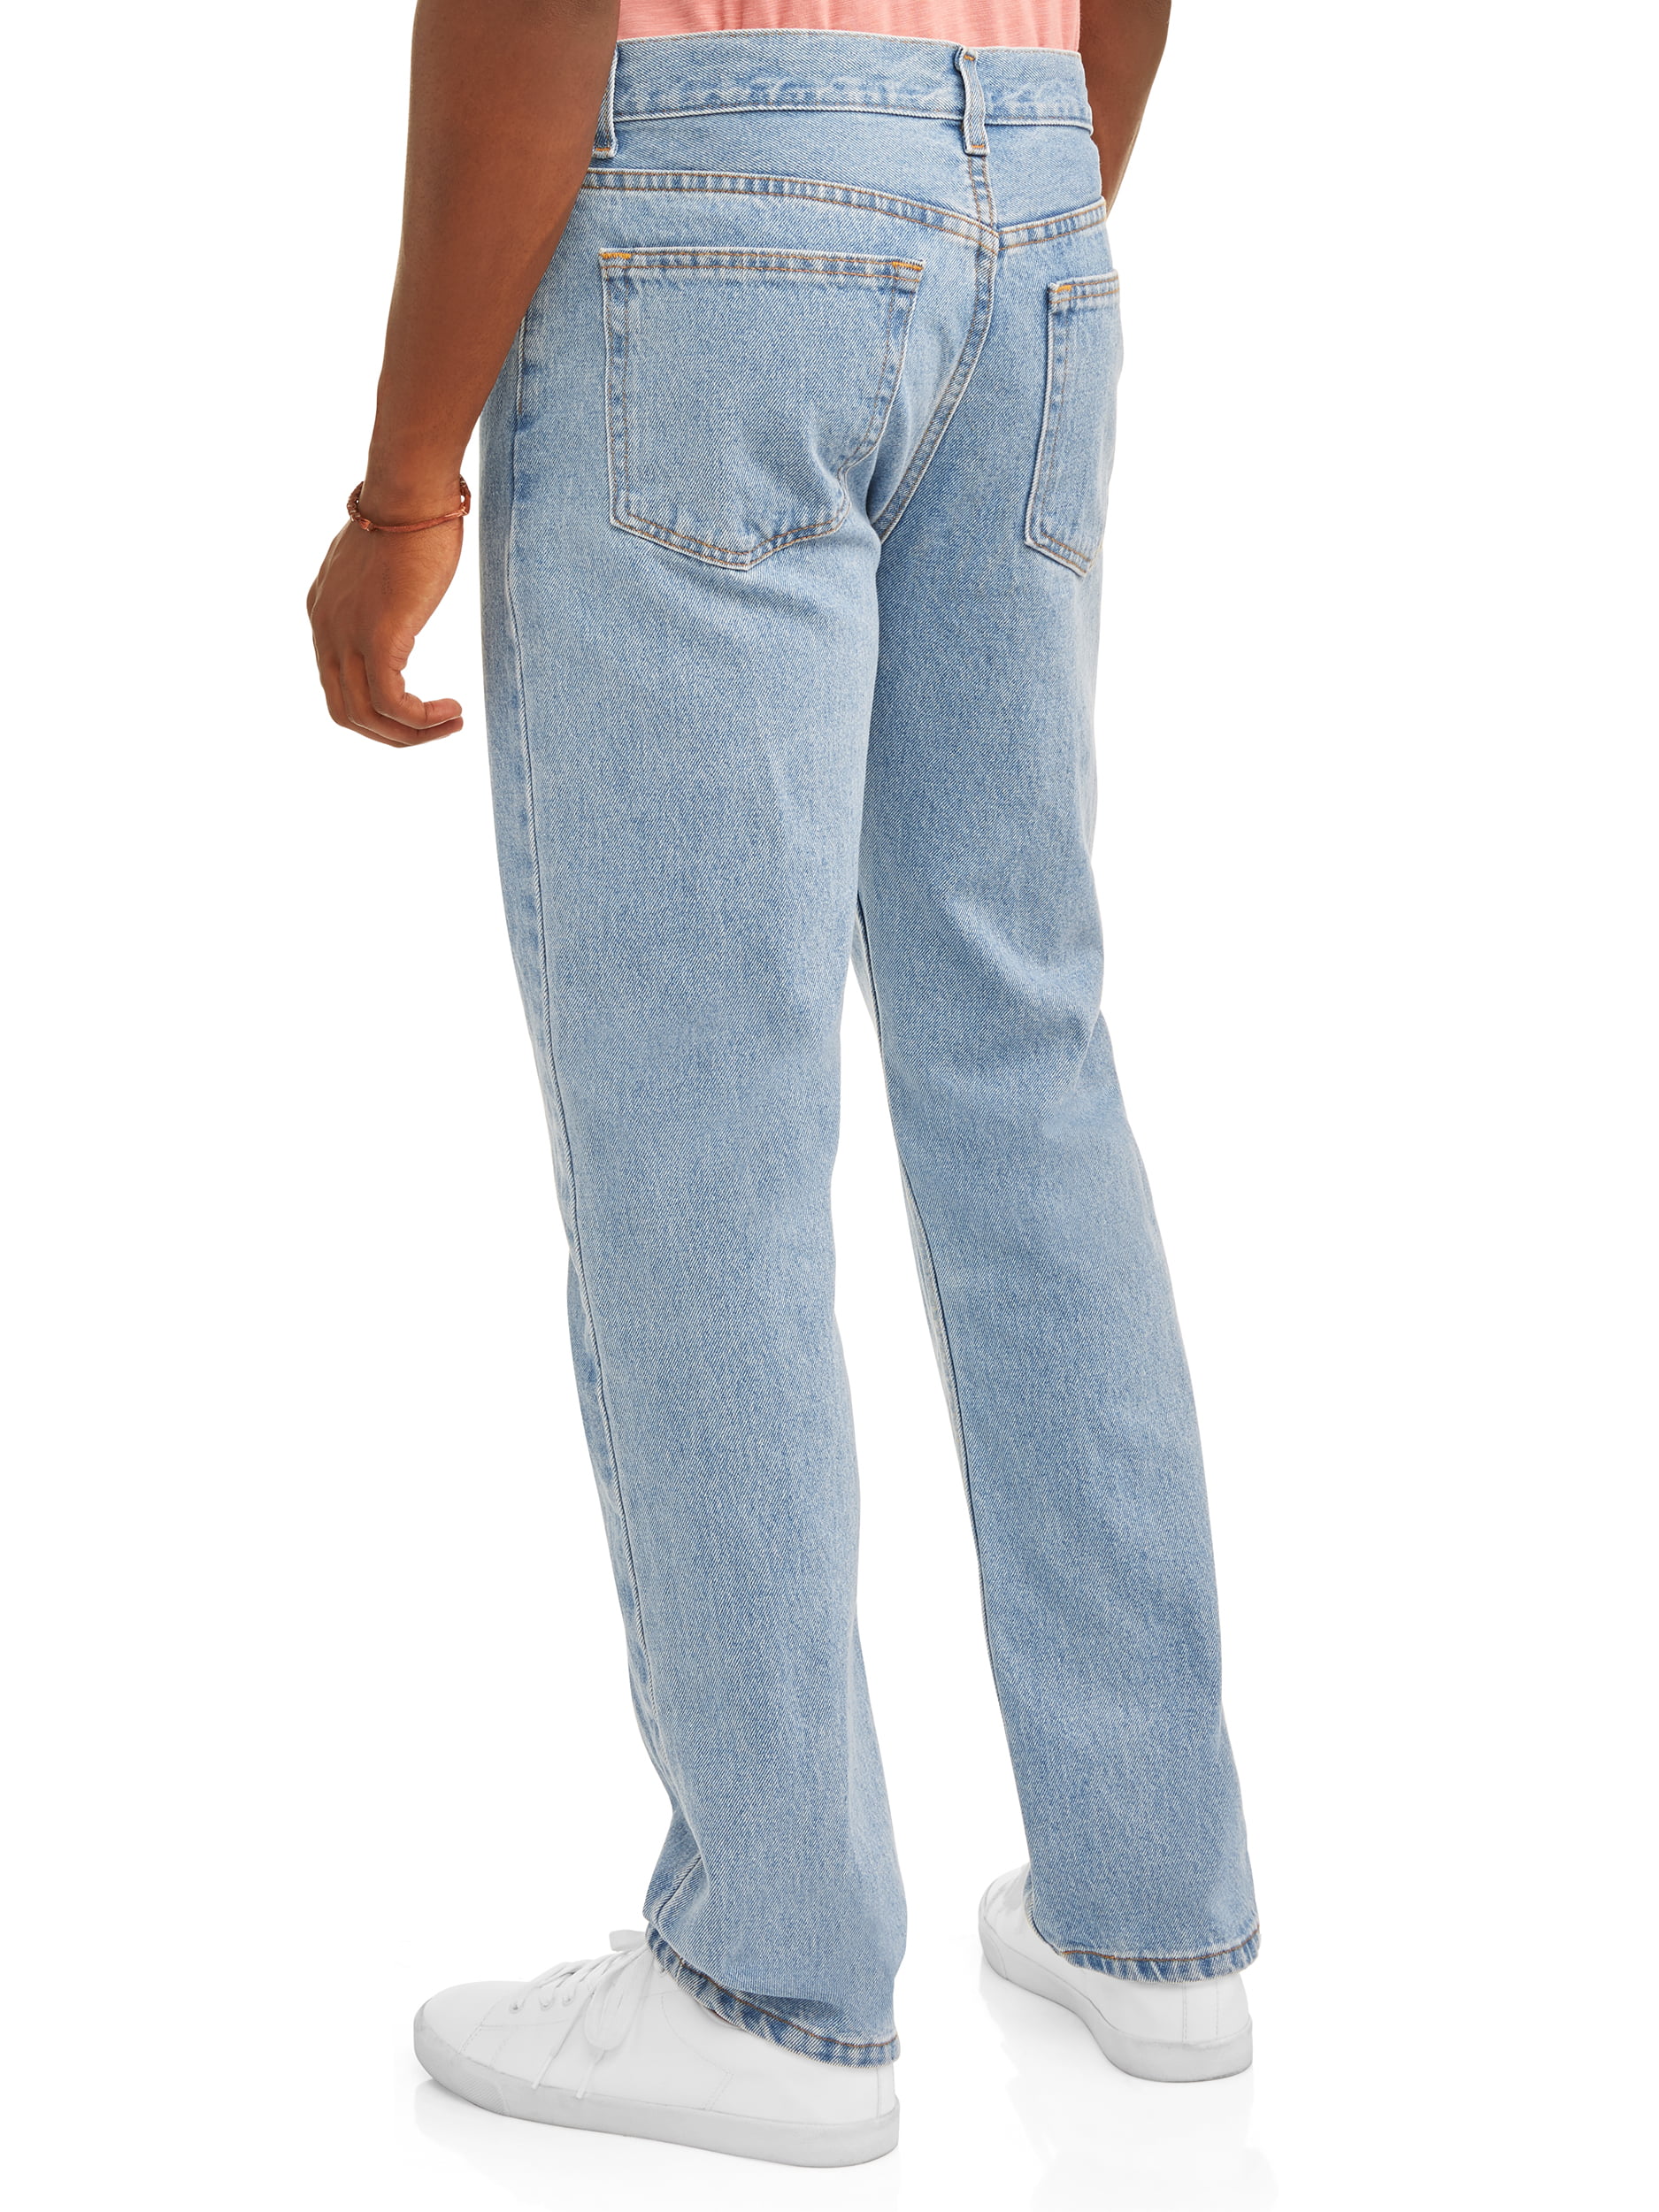 Ochtend Artiest Meerdere George Men's and Big Men's Regular Fit Jeans - Walmart.com